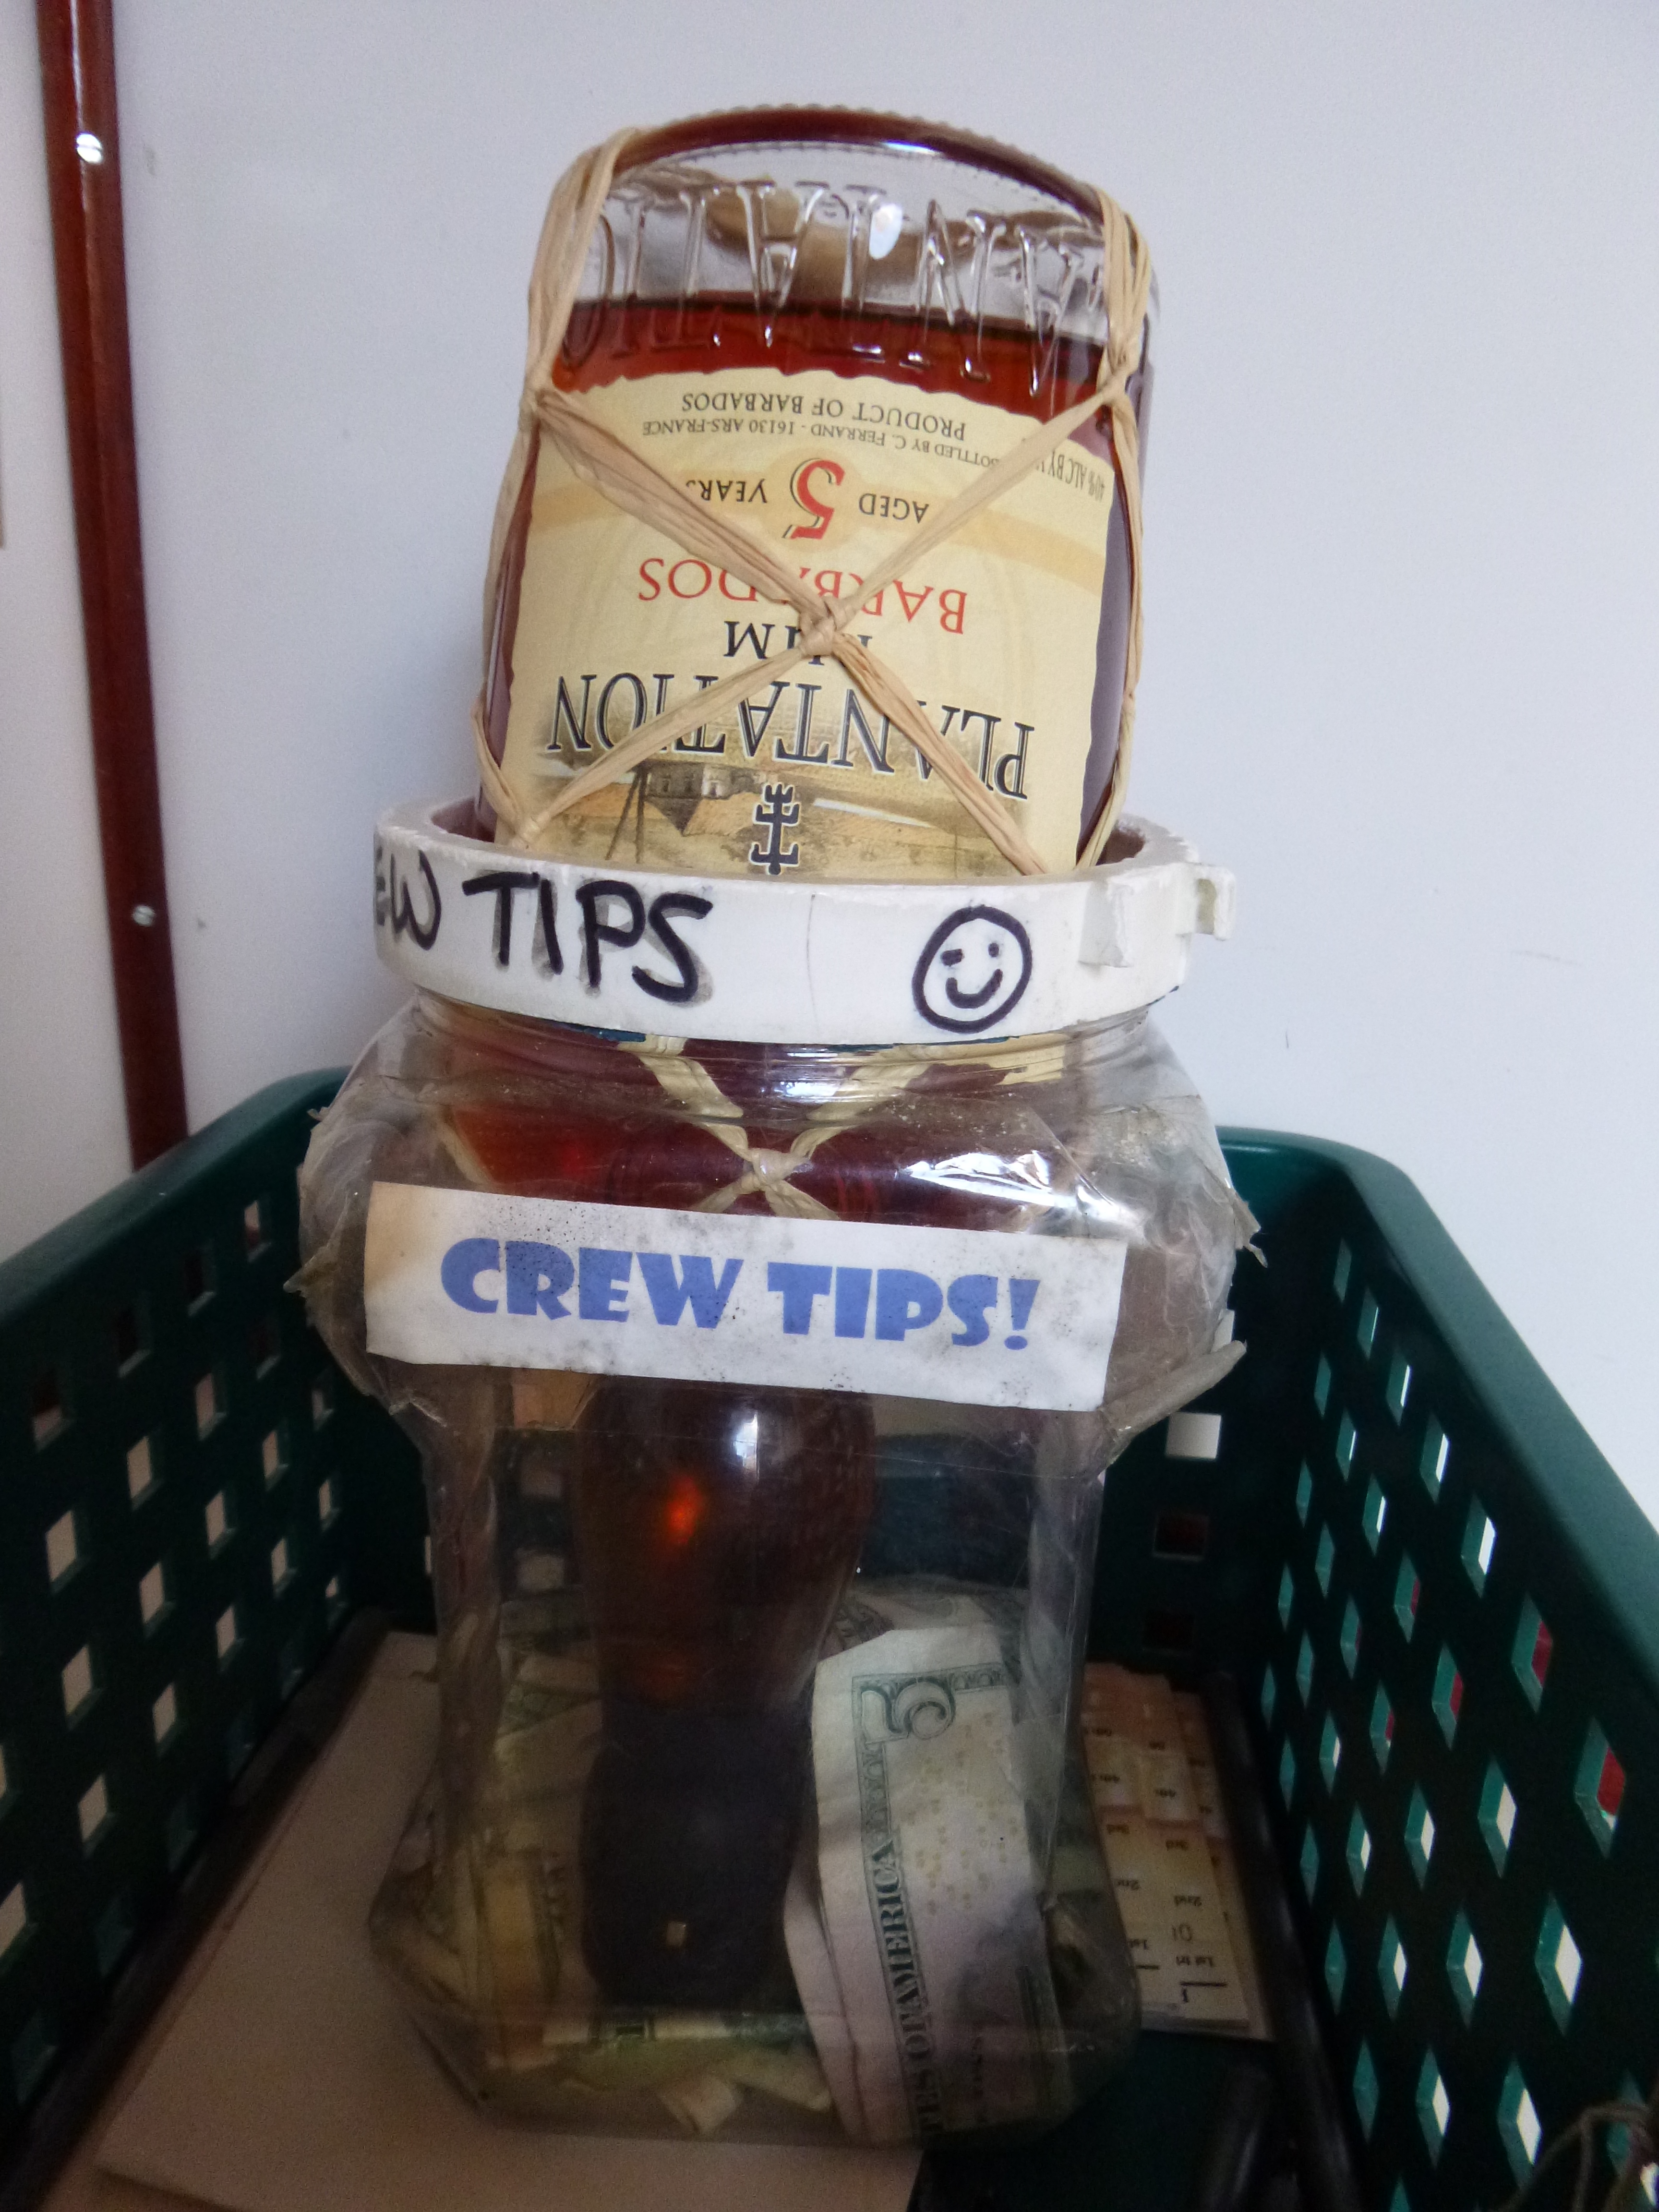 Best tip ever! A bottle of Plantation Rum